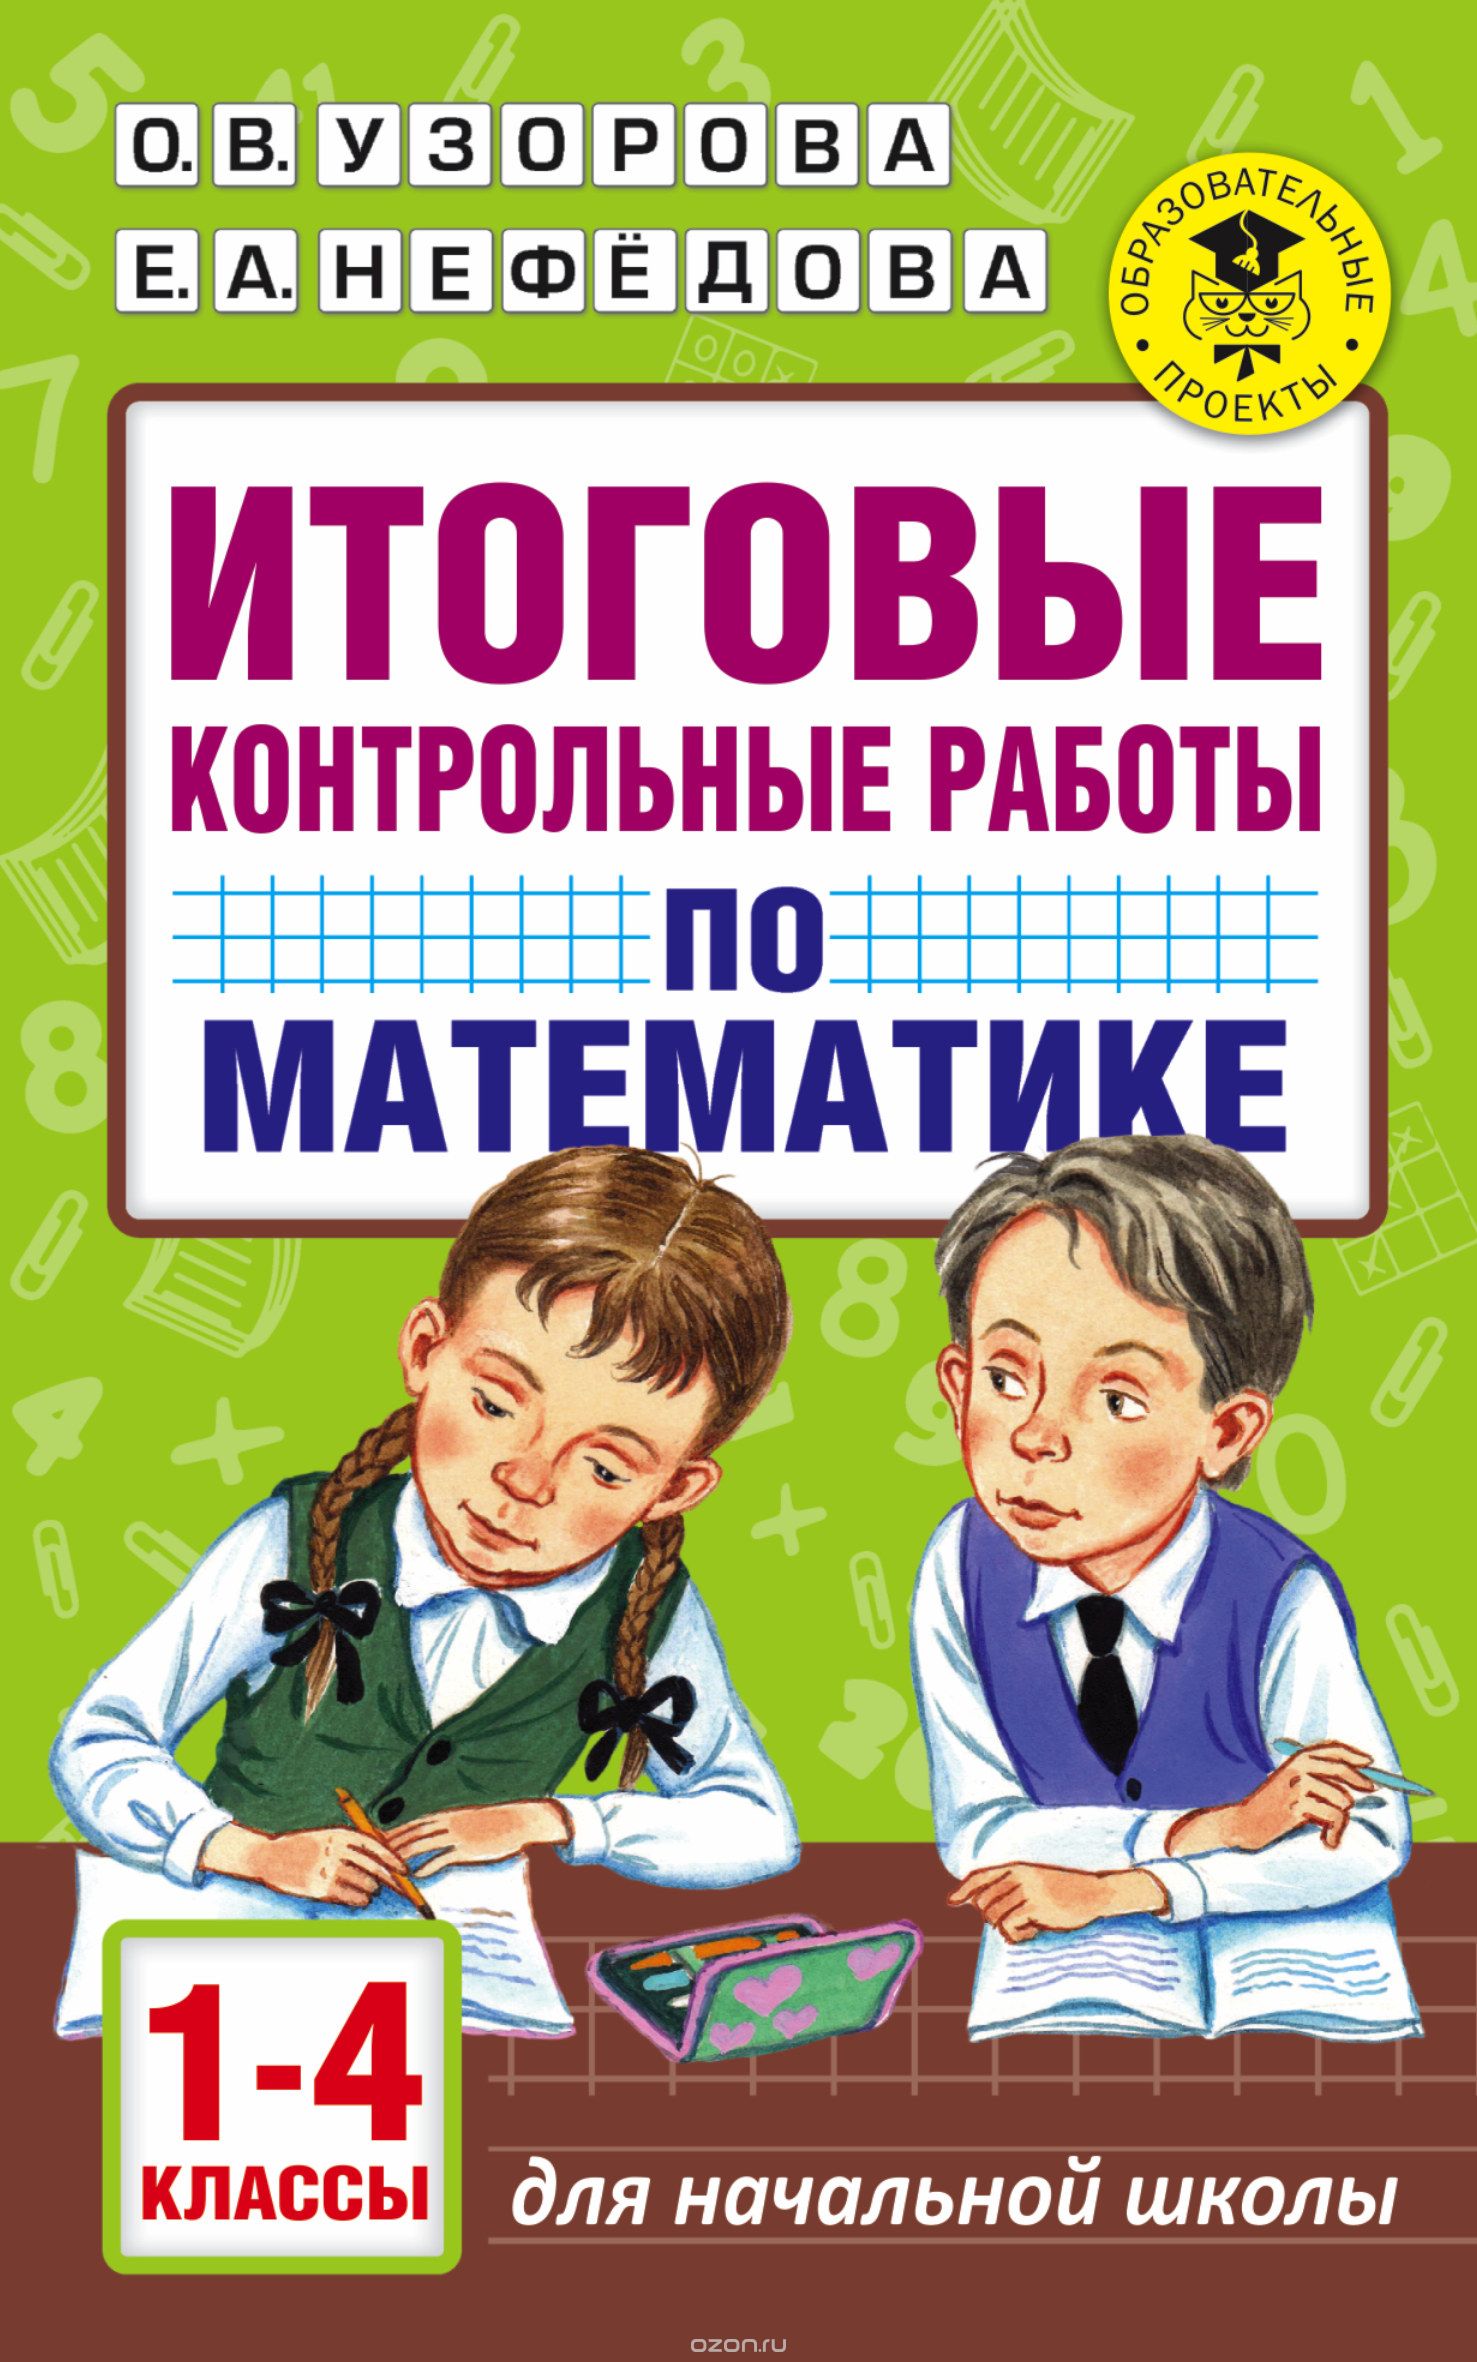 Скачать книгу "Итоговые контрольные работы по математике 1-4 классы, Узорова О. В.; Нефедова Елена Алексеевна"